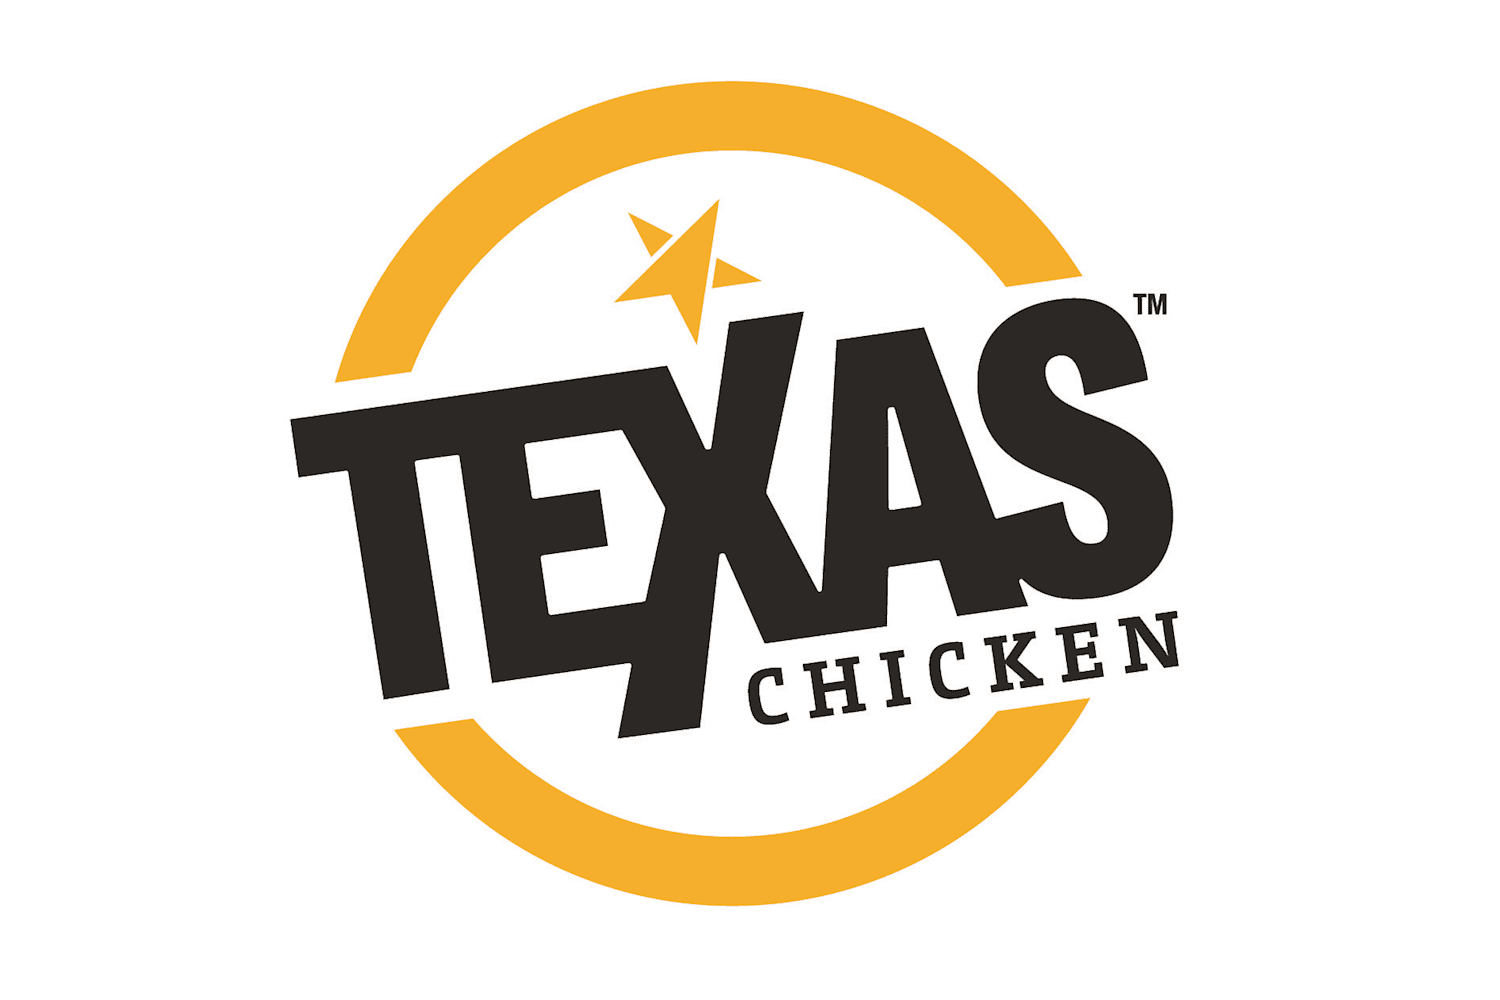 $10 Cash Voucher at Texas Chicken - Get Deals, Cashback and Rewards with ShopBack GO